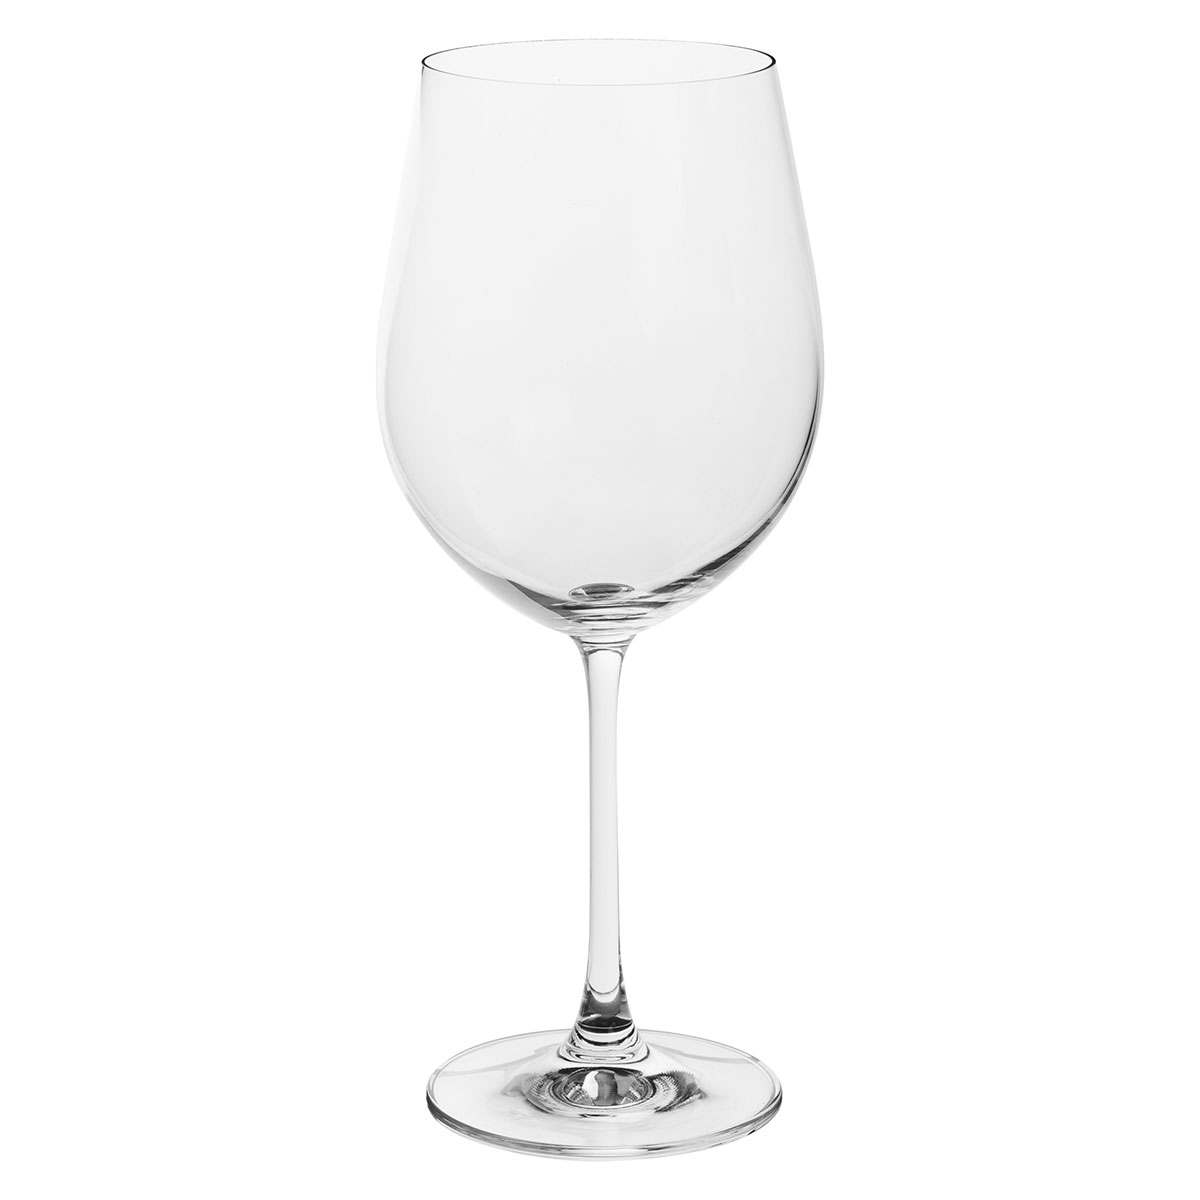 Ποτήρια Κρασιού Κολωνάτα 610ml (Σετ 2τμχ) S-D Cri 154357 219704